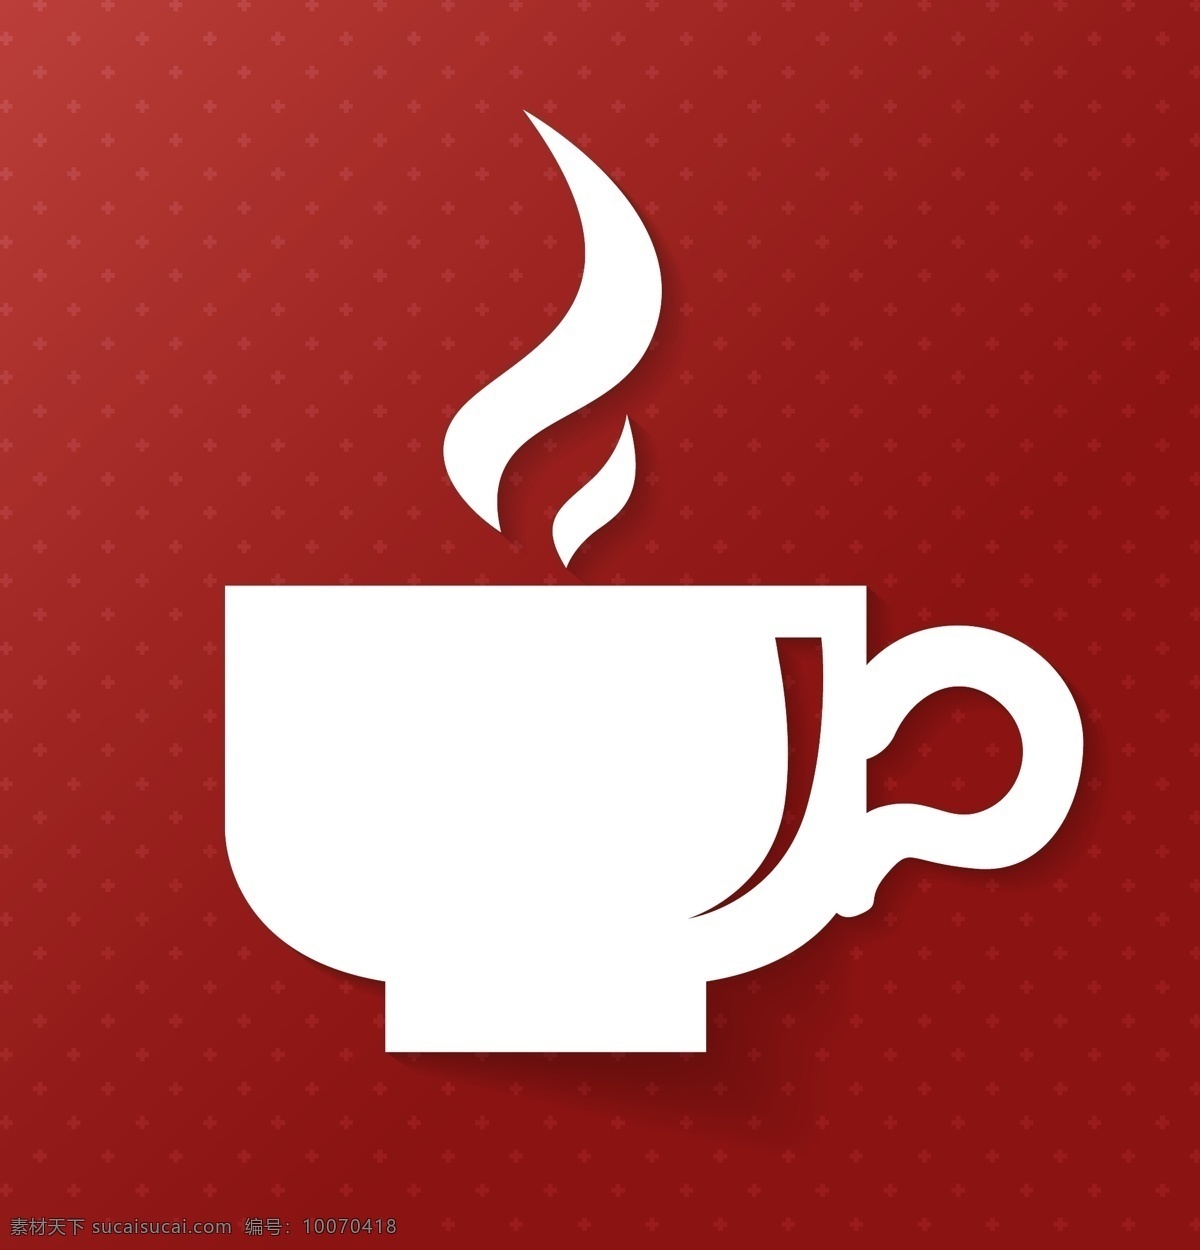 白色咖啡杯 白色 咖啡杯 模板下载 咖啡宣传图 海报 咖啡店 餐饮美食 标志图标 矢量素材 红色